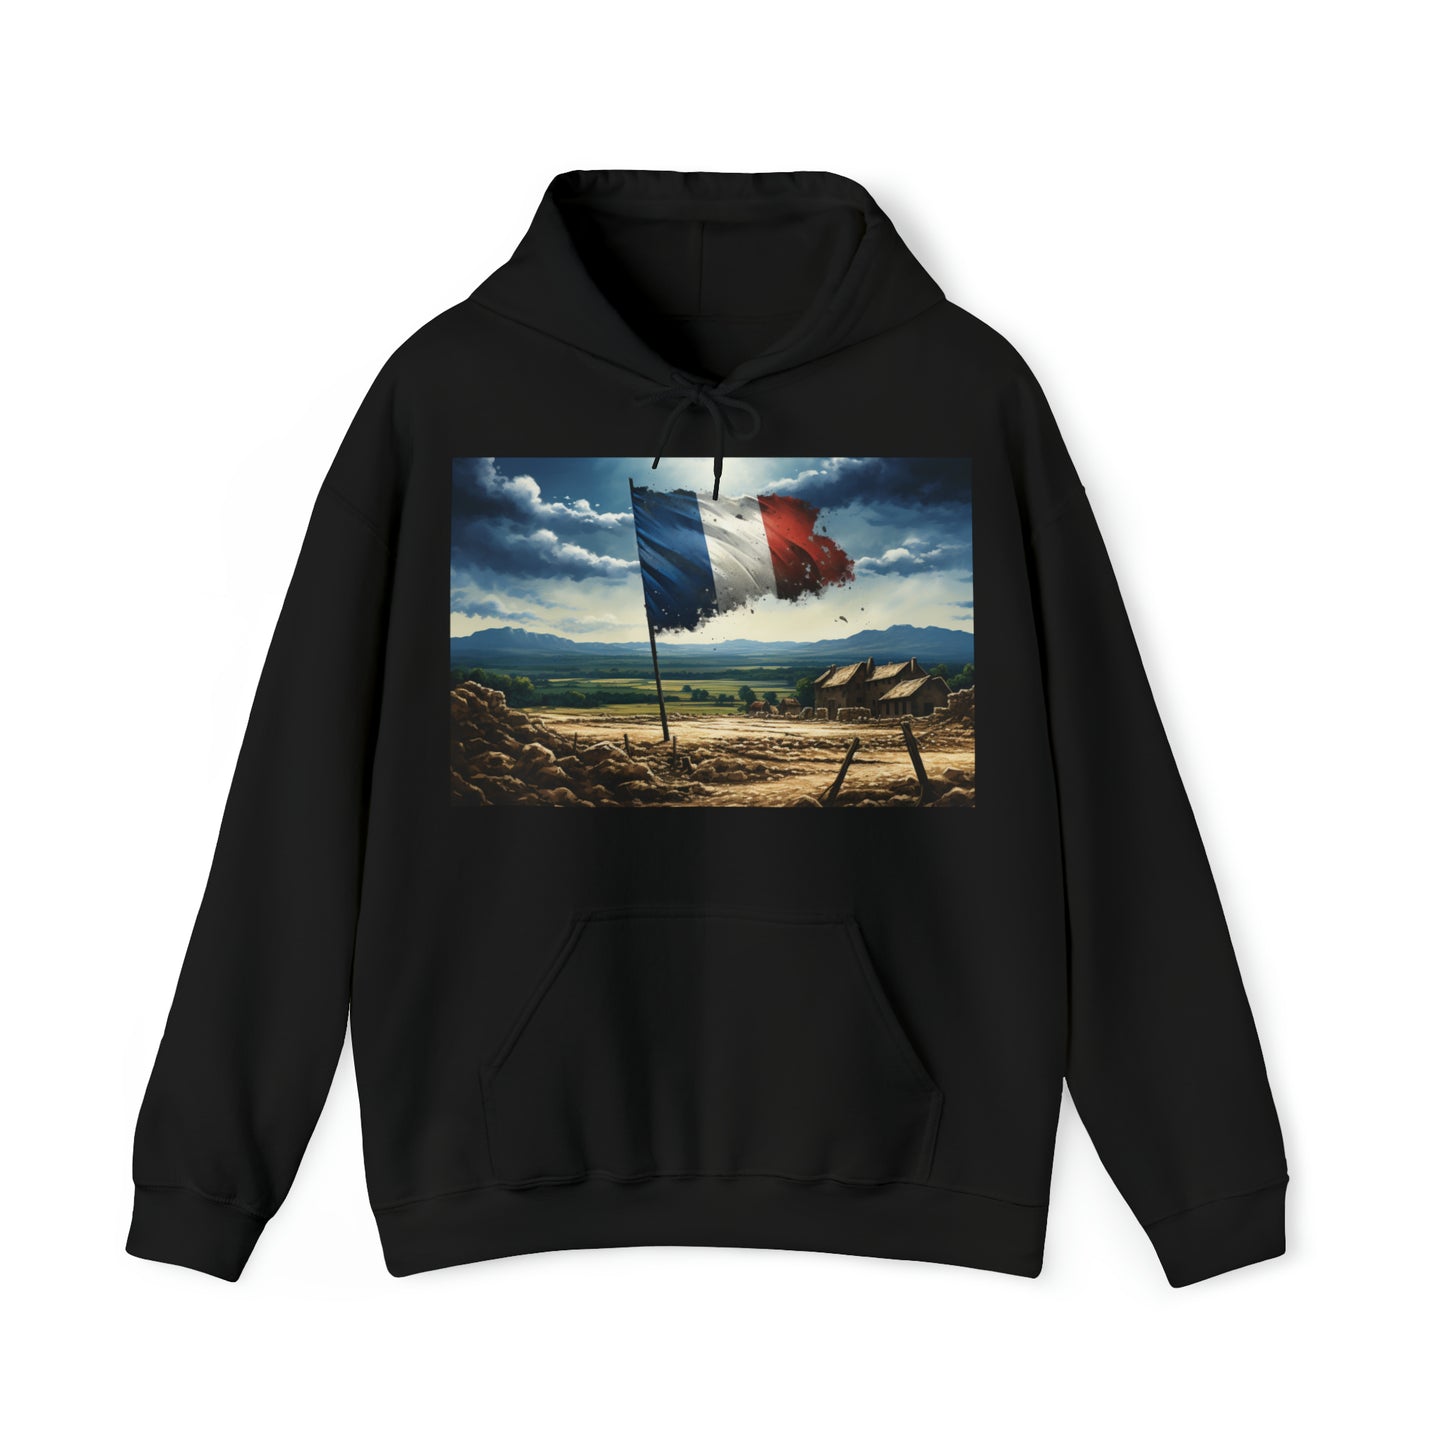 France - dark hoodies